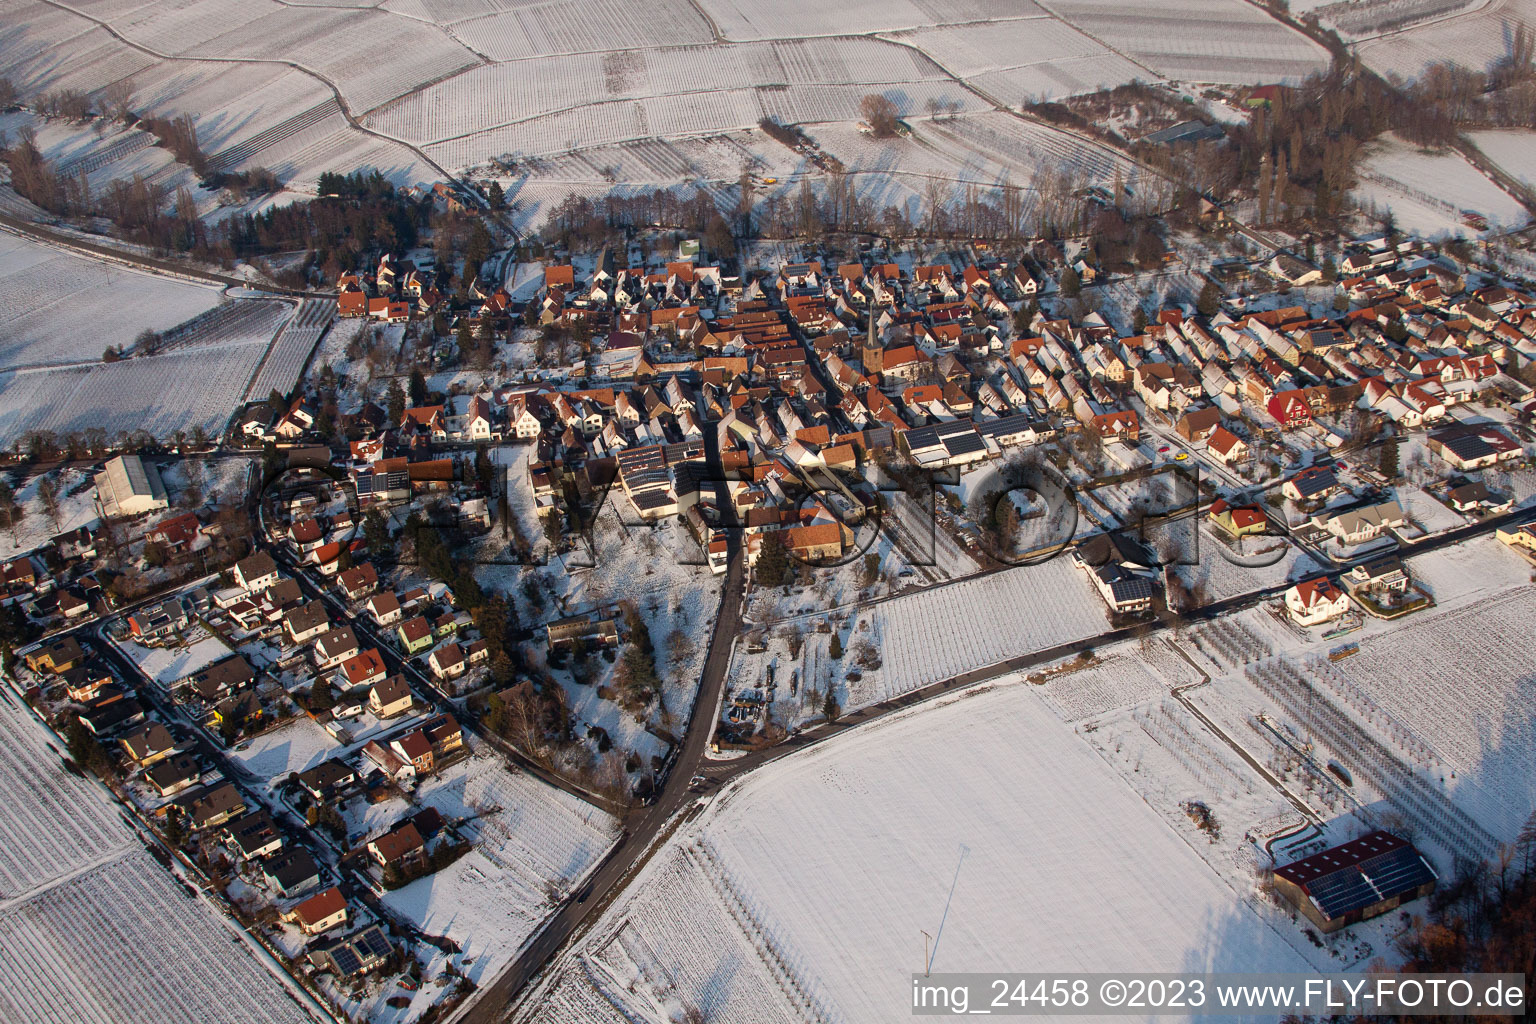 Aerial photograpy of In winter in the district Heuchelheim in Heuchelheim-Klingen in the state Rhineland-Palatinate, Germany